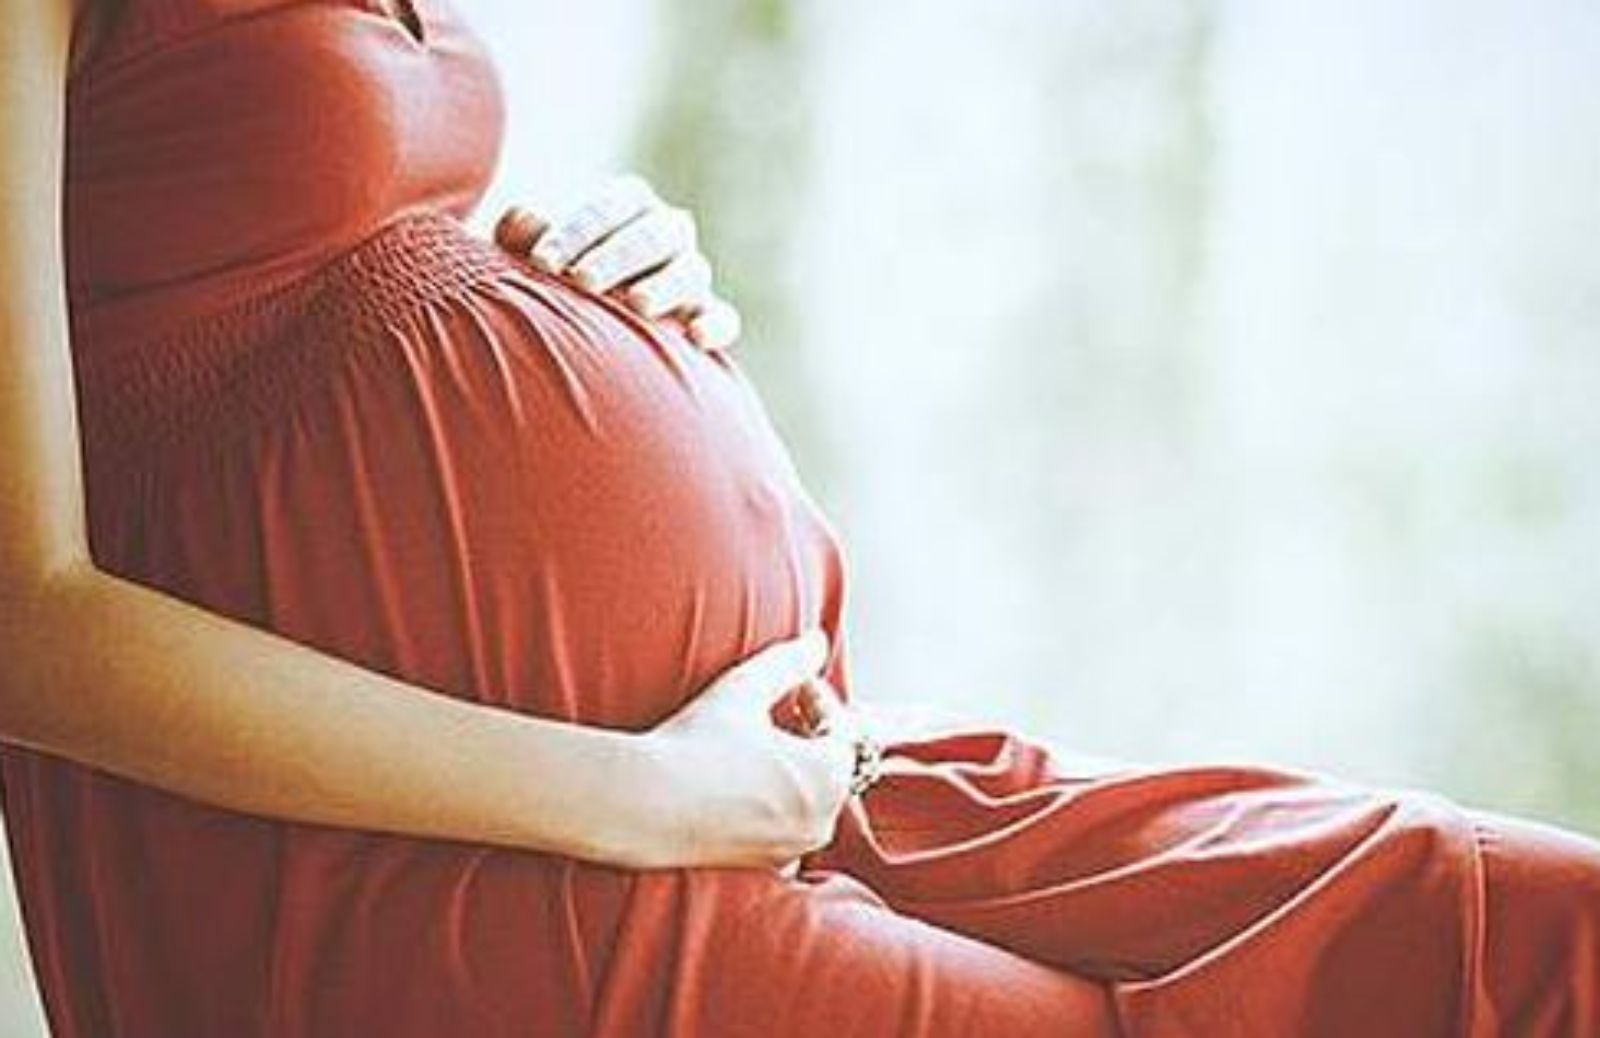 La ricostruzione unghie in gravidanza si può fare?